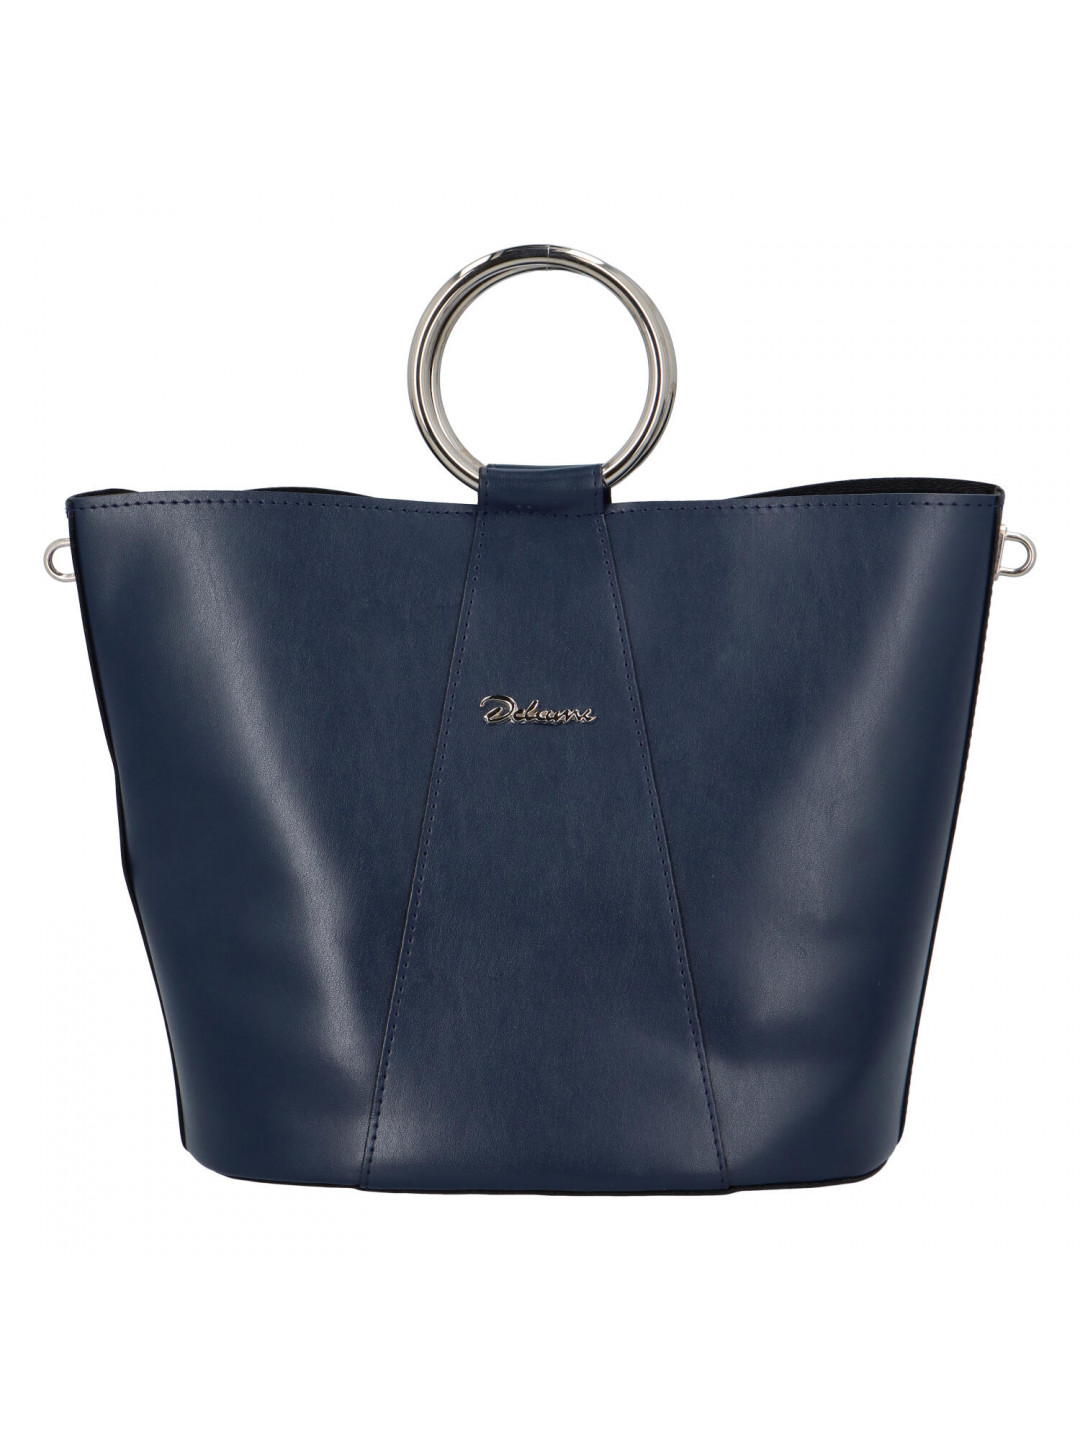 Nadčasová dámská kabelka s organizérem tmavě modrá – Delami Karsyn